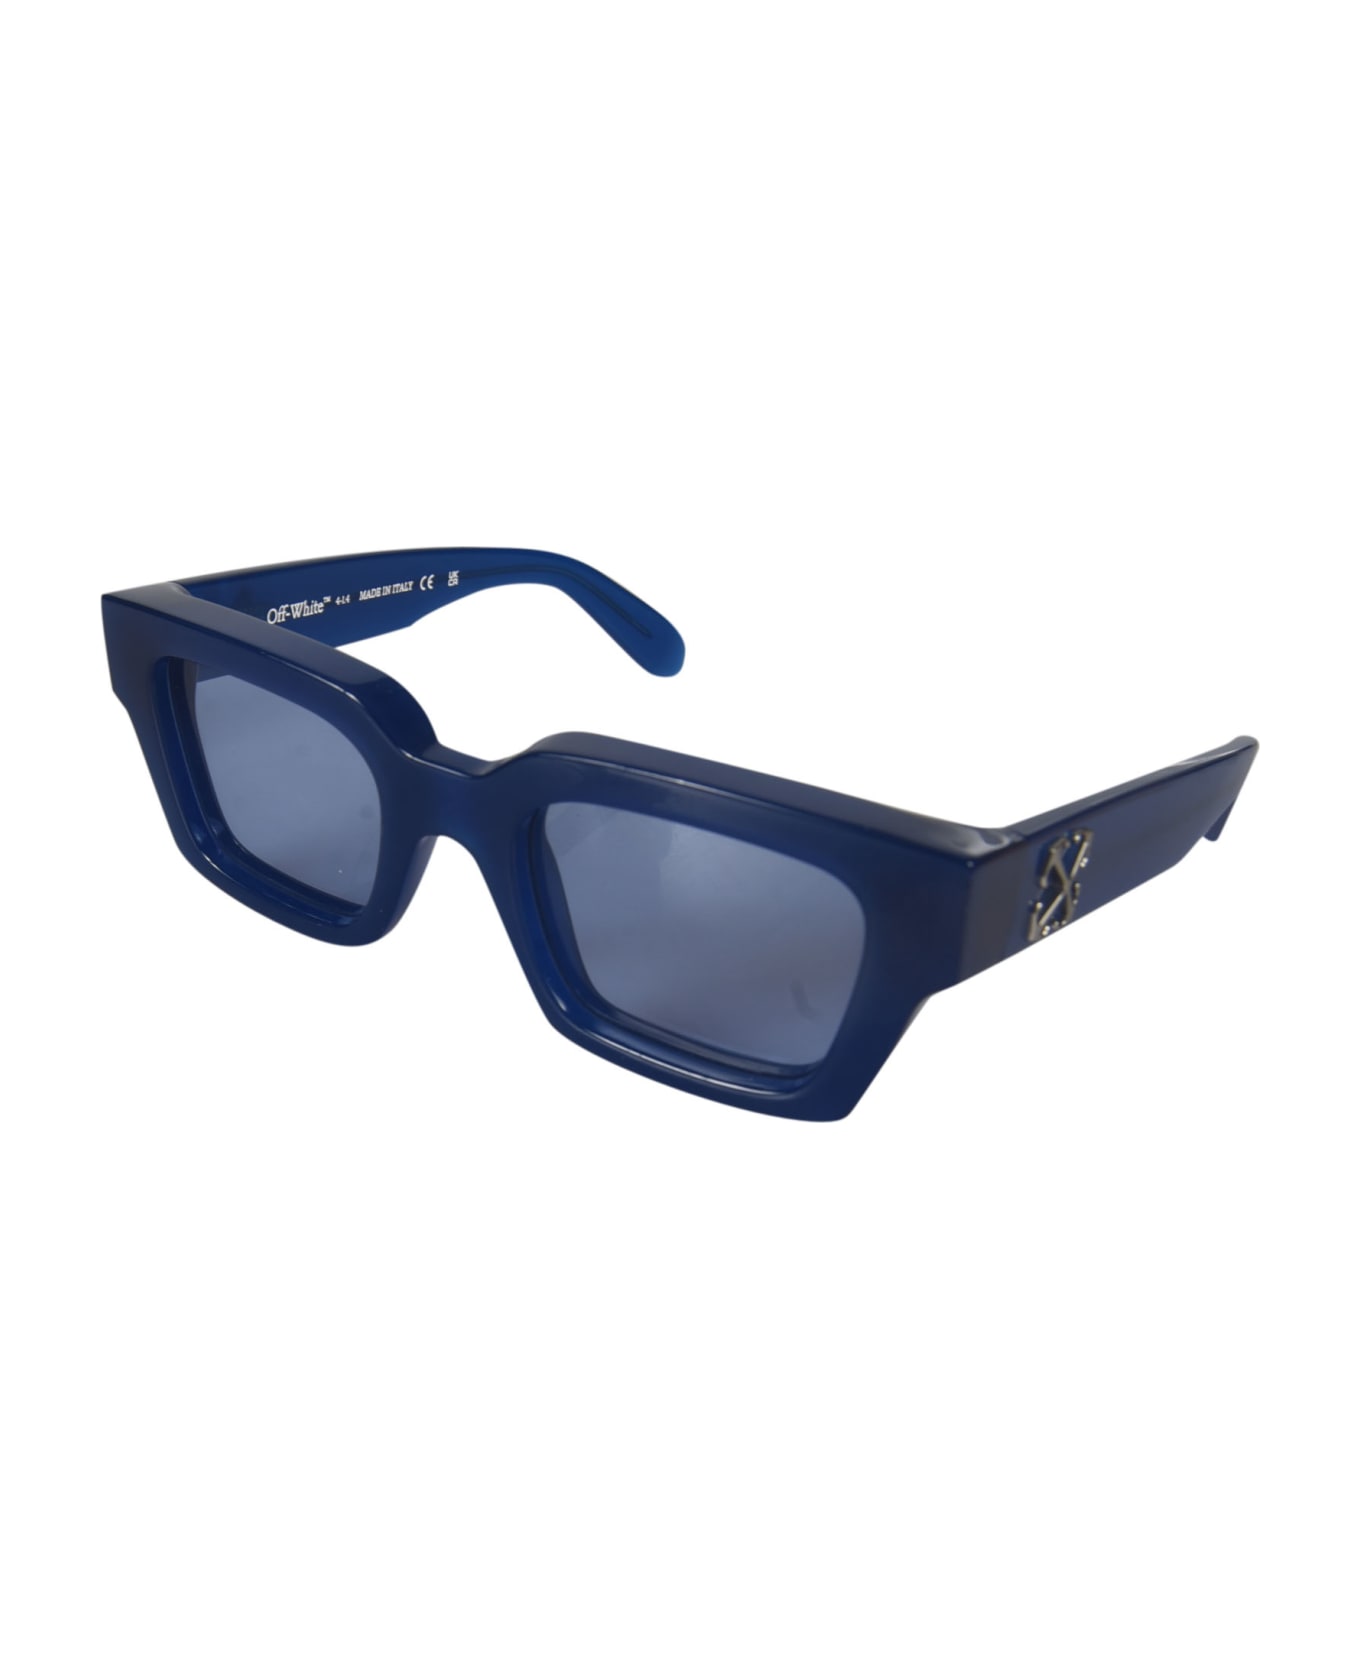 Off-White Virgil Sunglasses - 4540 BLUE